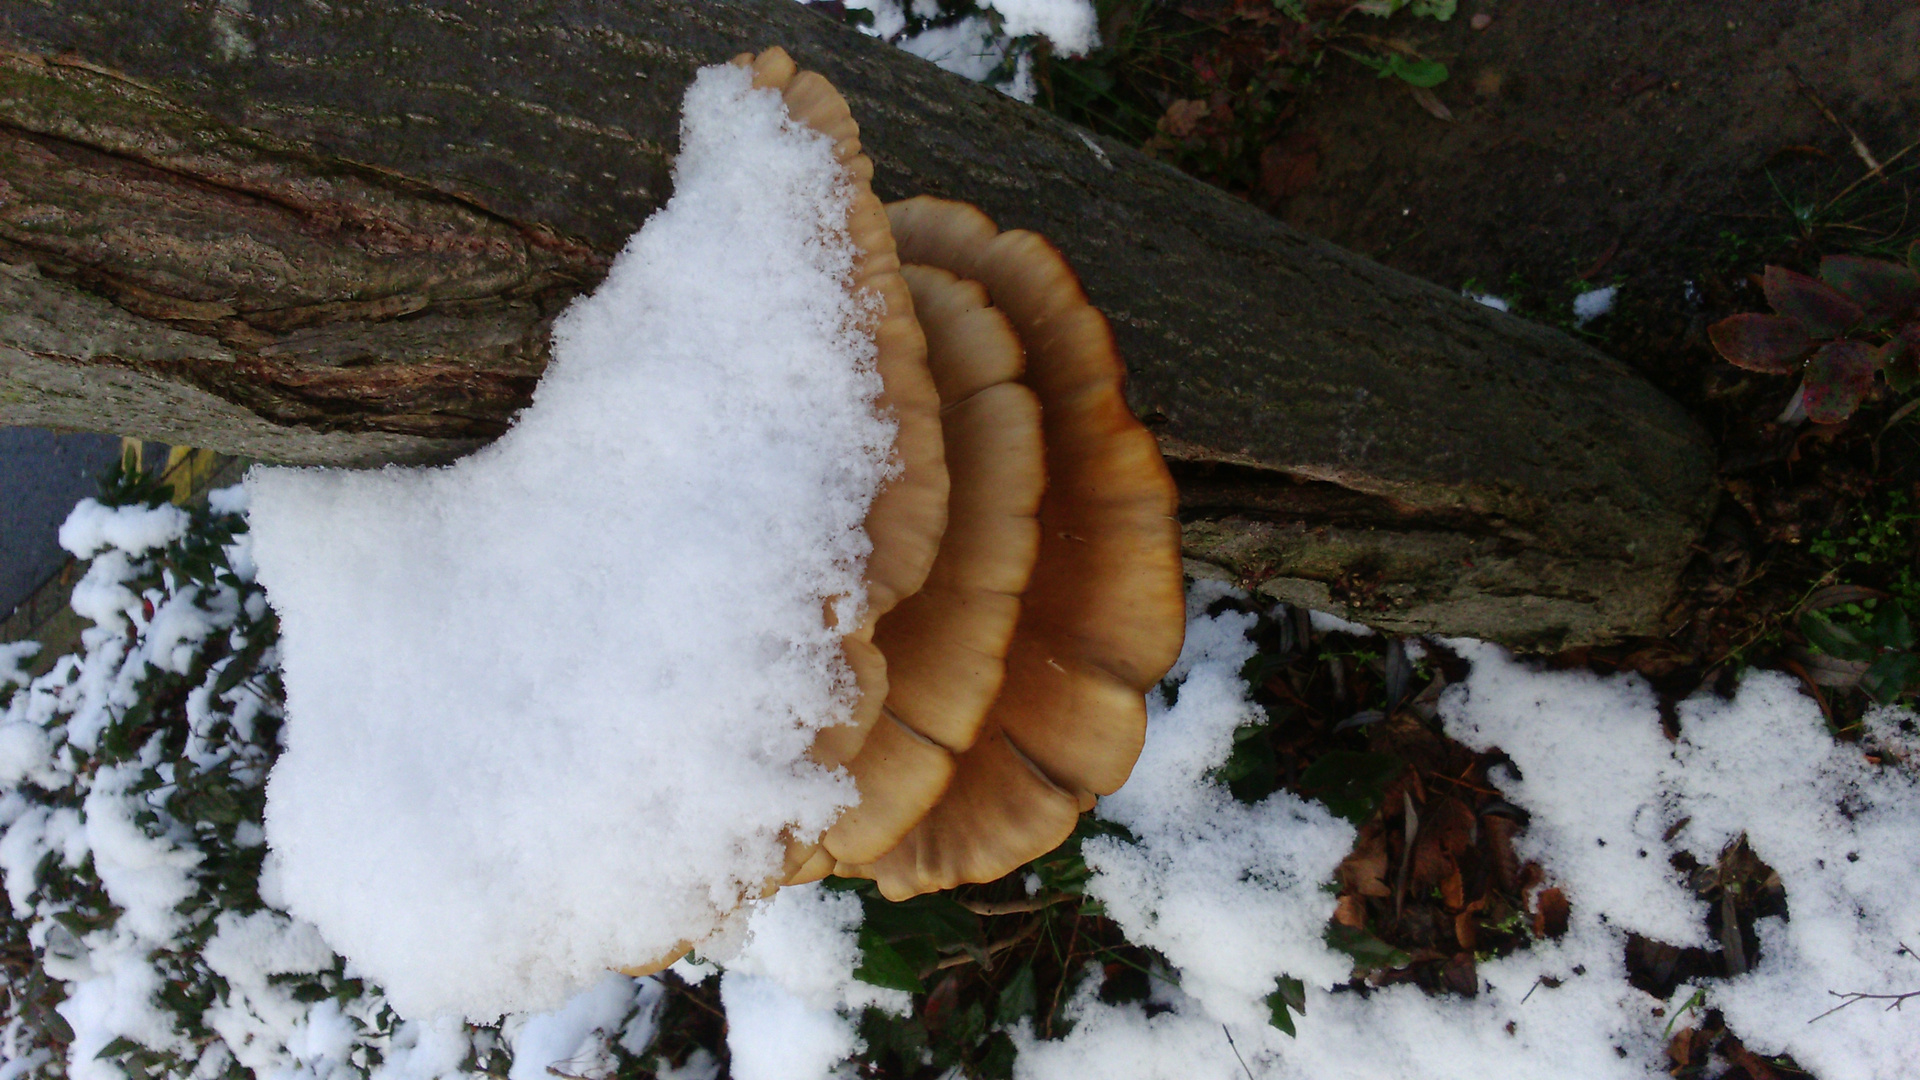 Ob dem pilz wohl kalt ist unter dem schneedeckchen?